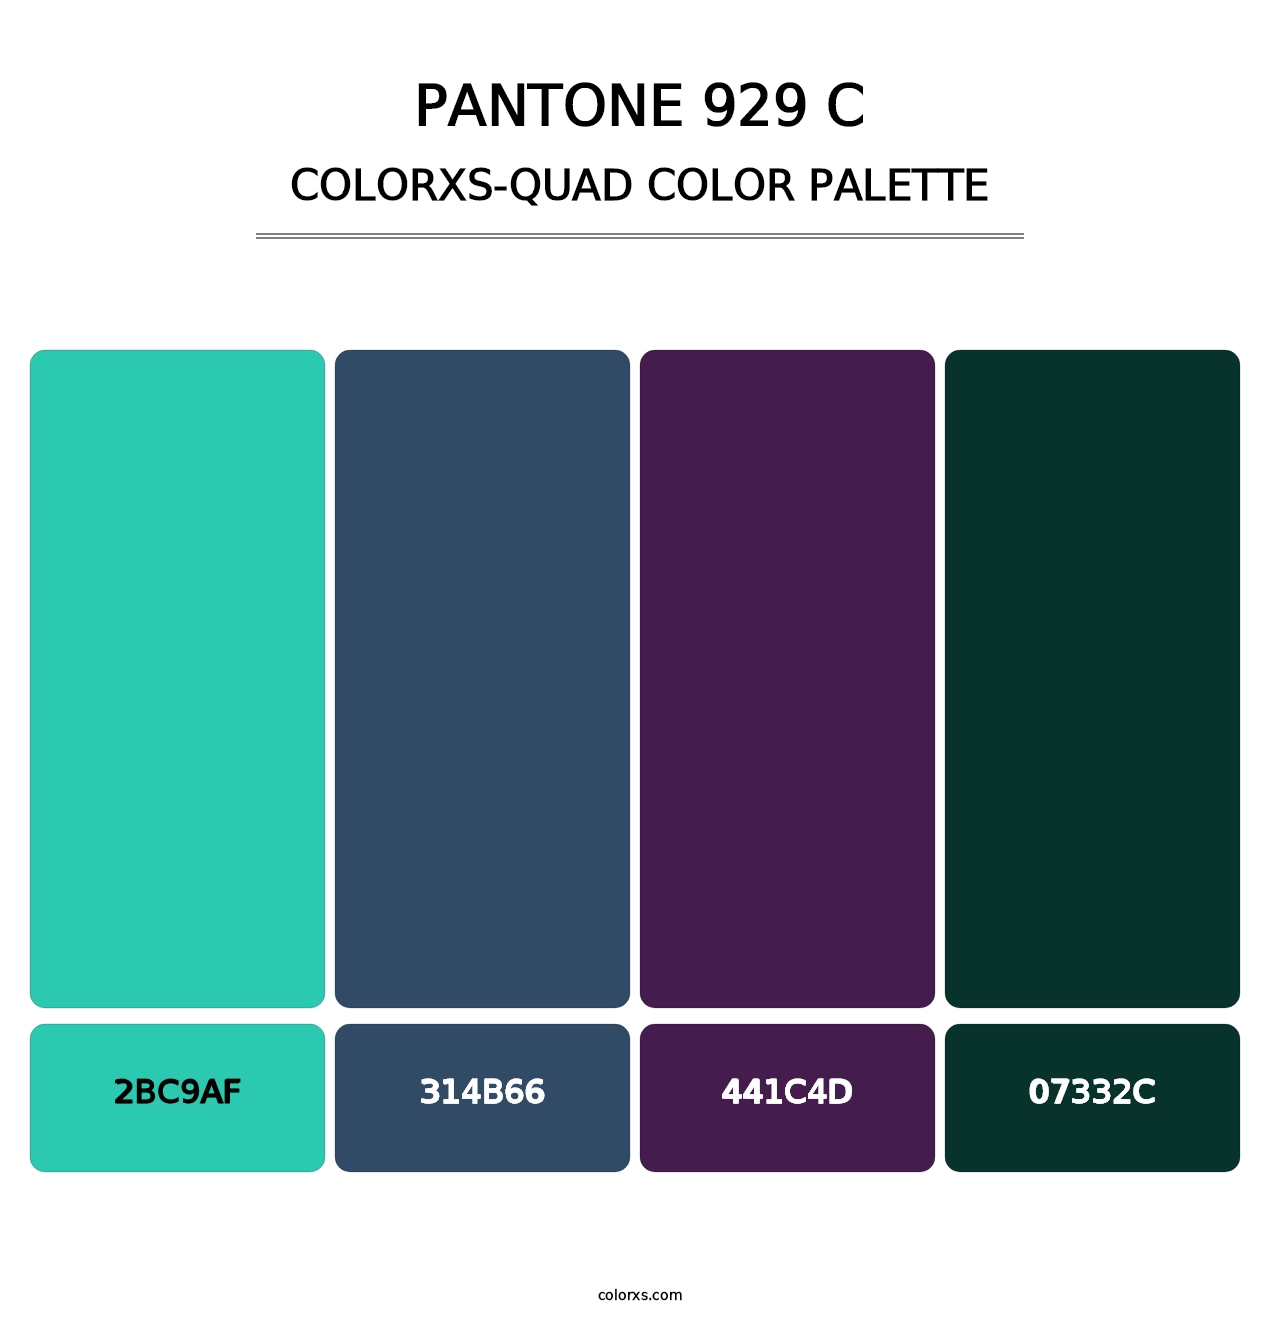 PANTONE 929 C - Colorxs Quad Palette